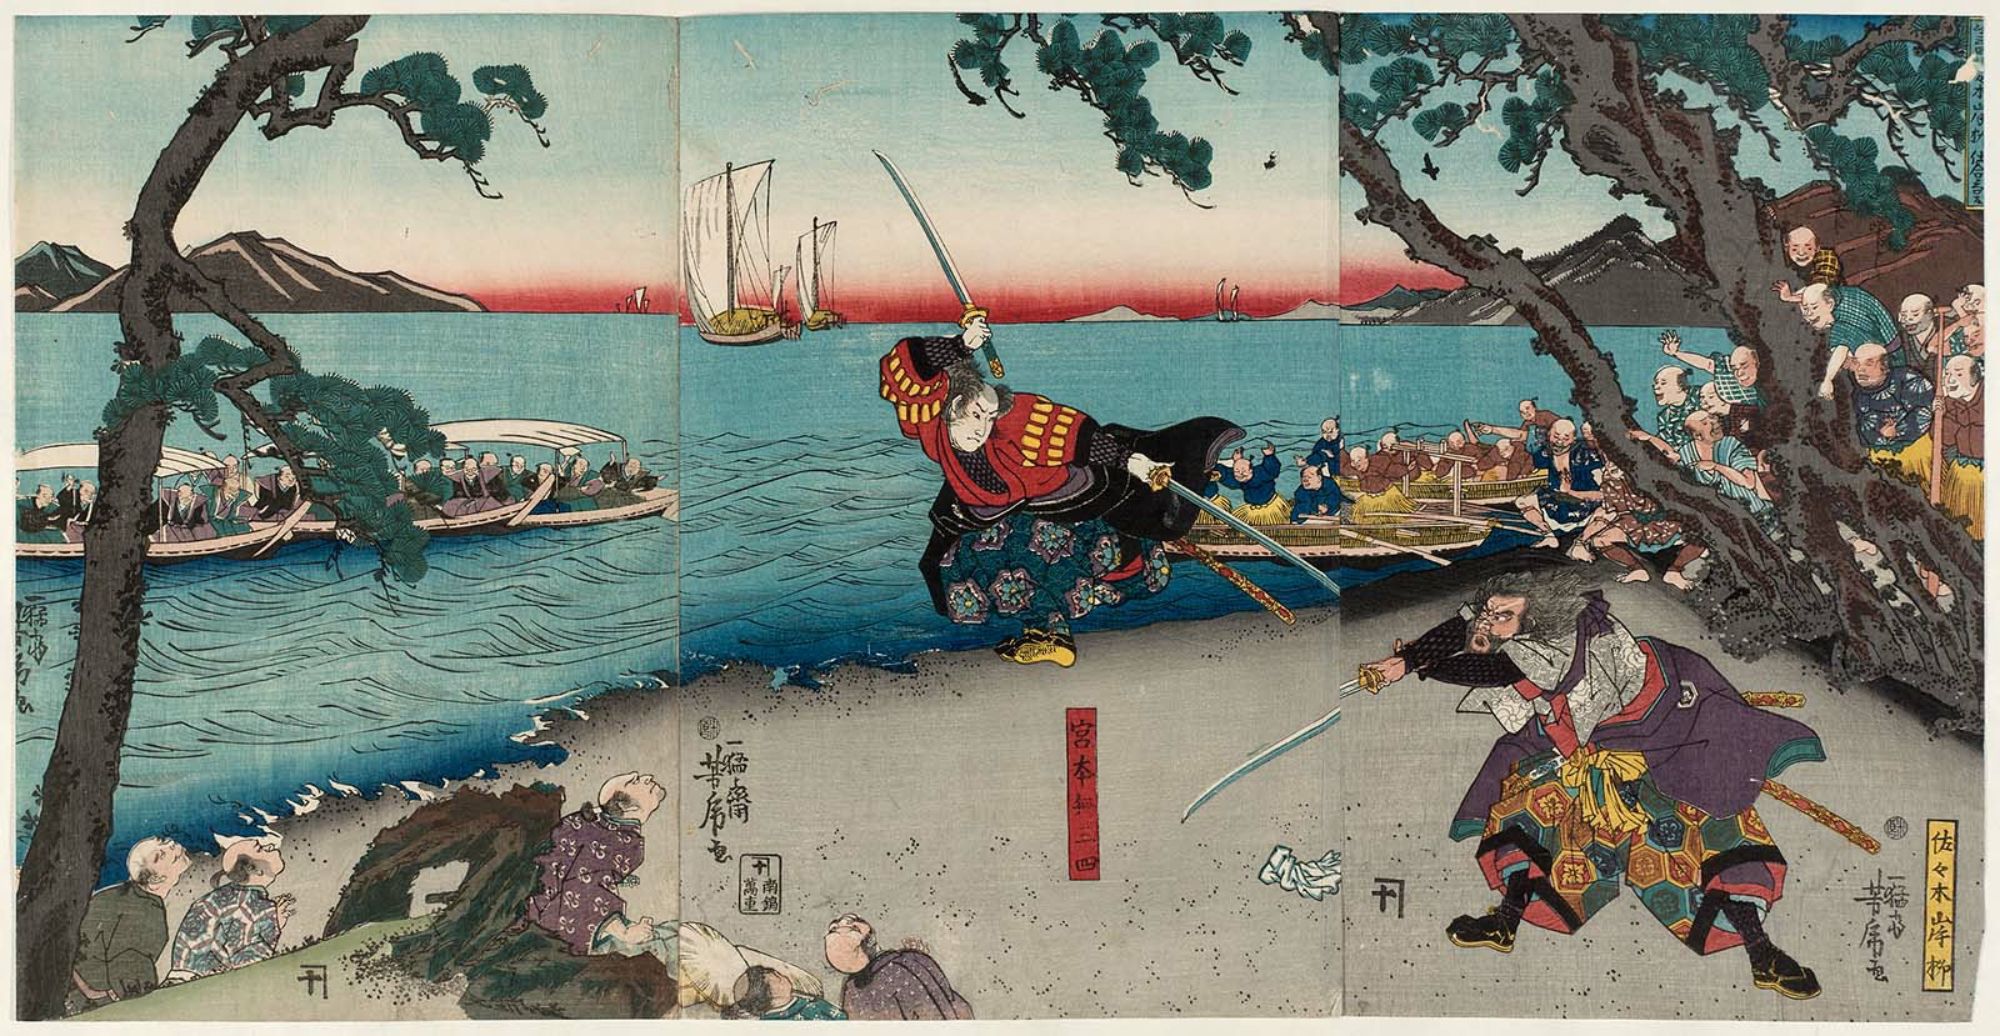 миямото мусаси сасаки кодзиро книга пяти колец величайшая дуэль самураев катана нодати отвратительные мужики disgusting men